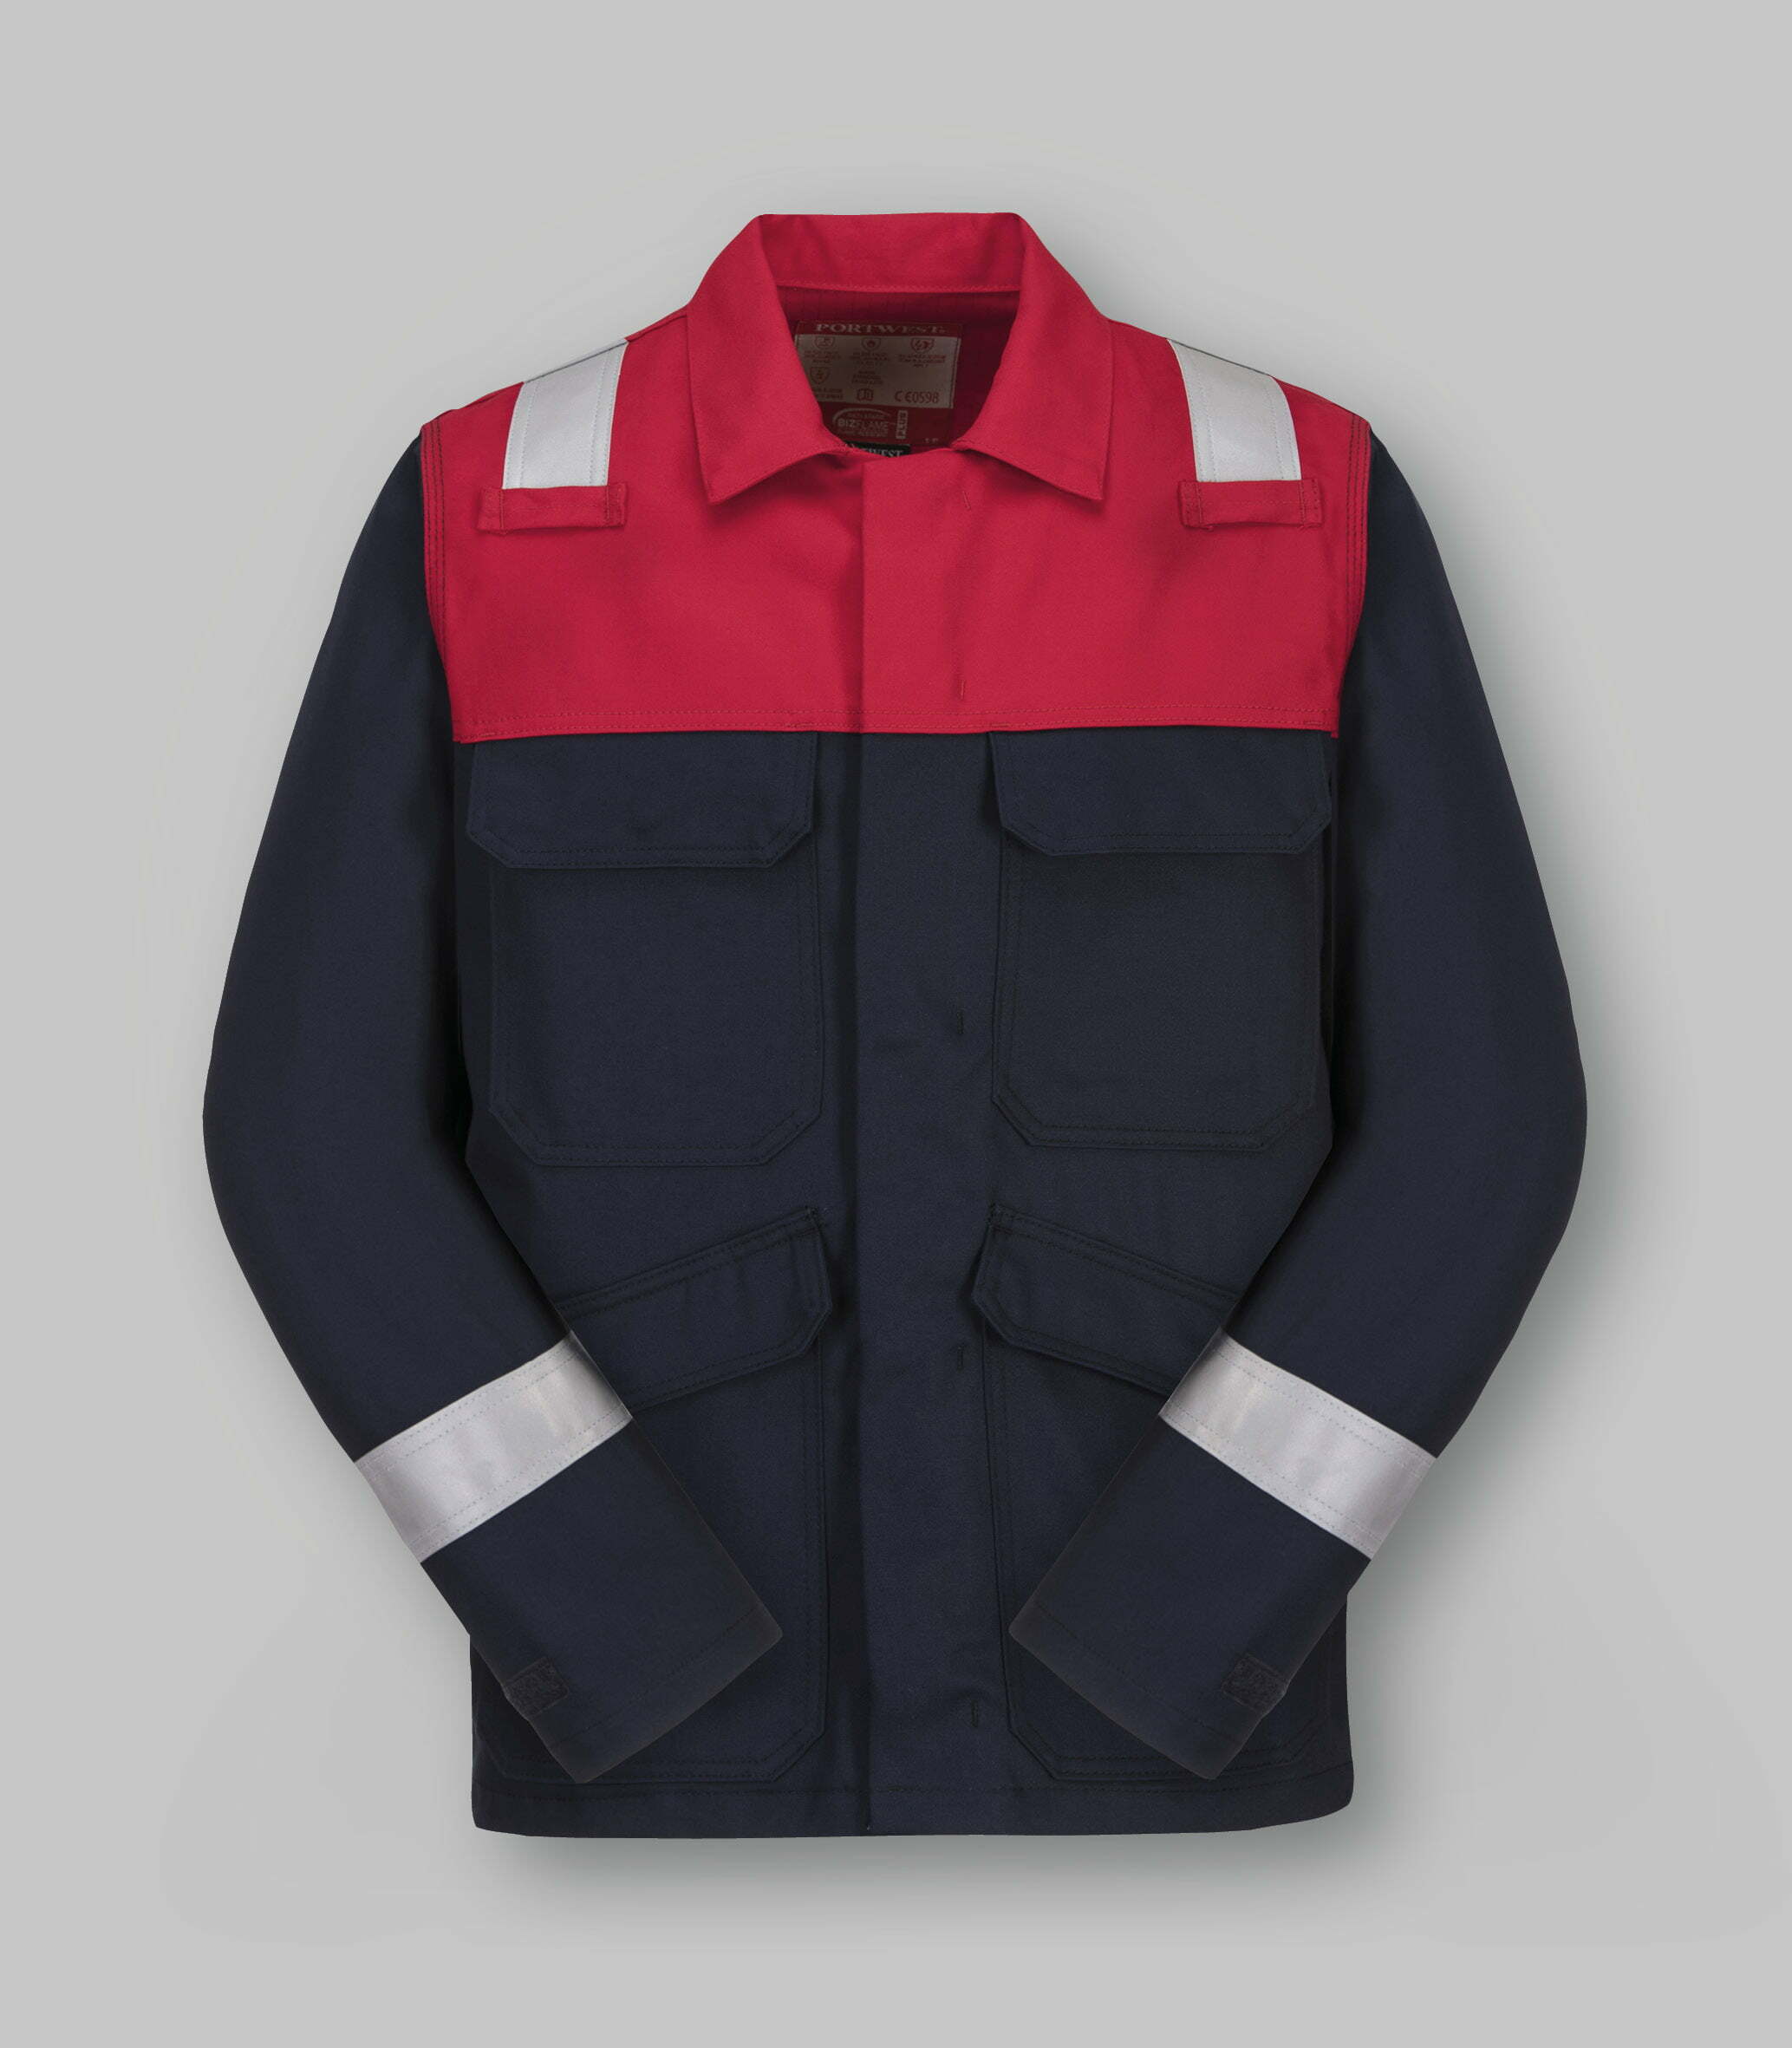 Two-tone multi-norm jacket-abbigliamentocertificato.com